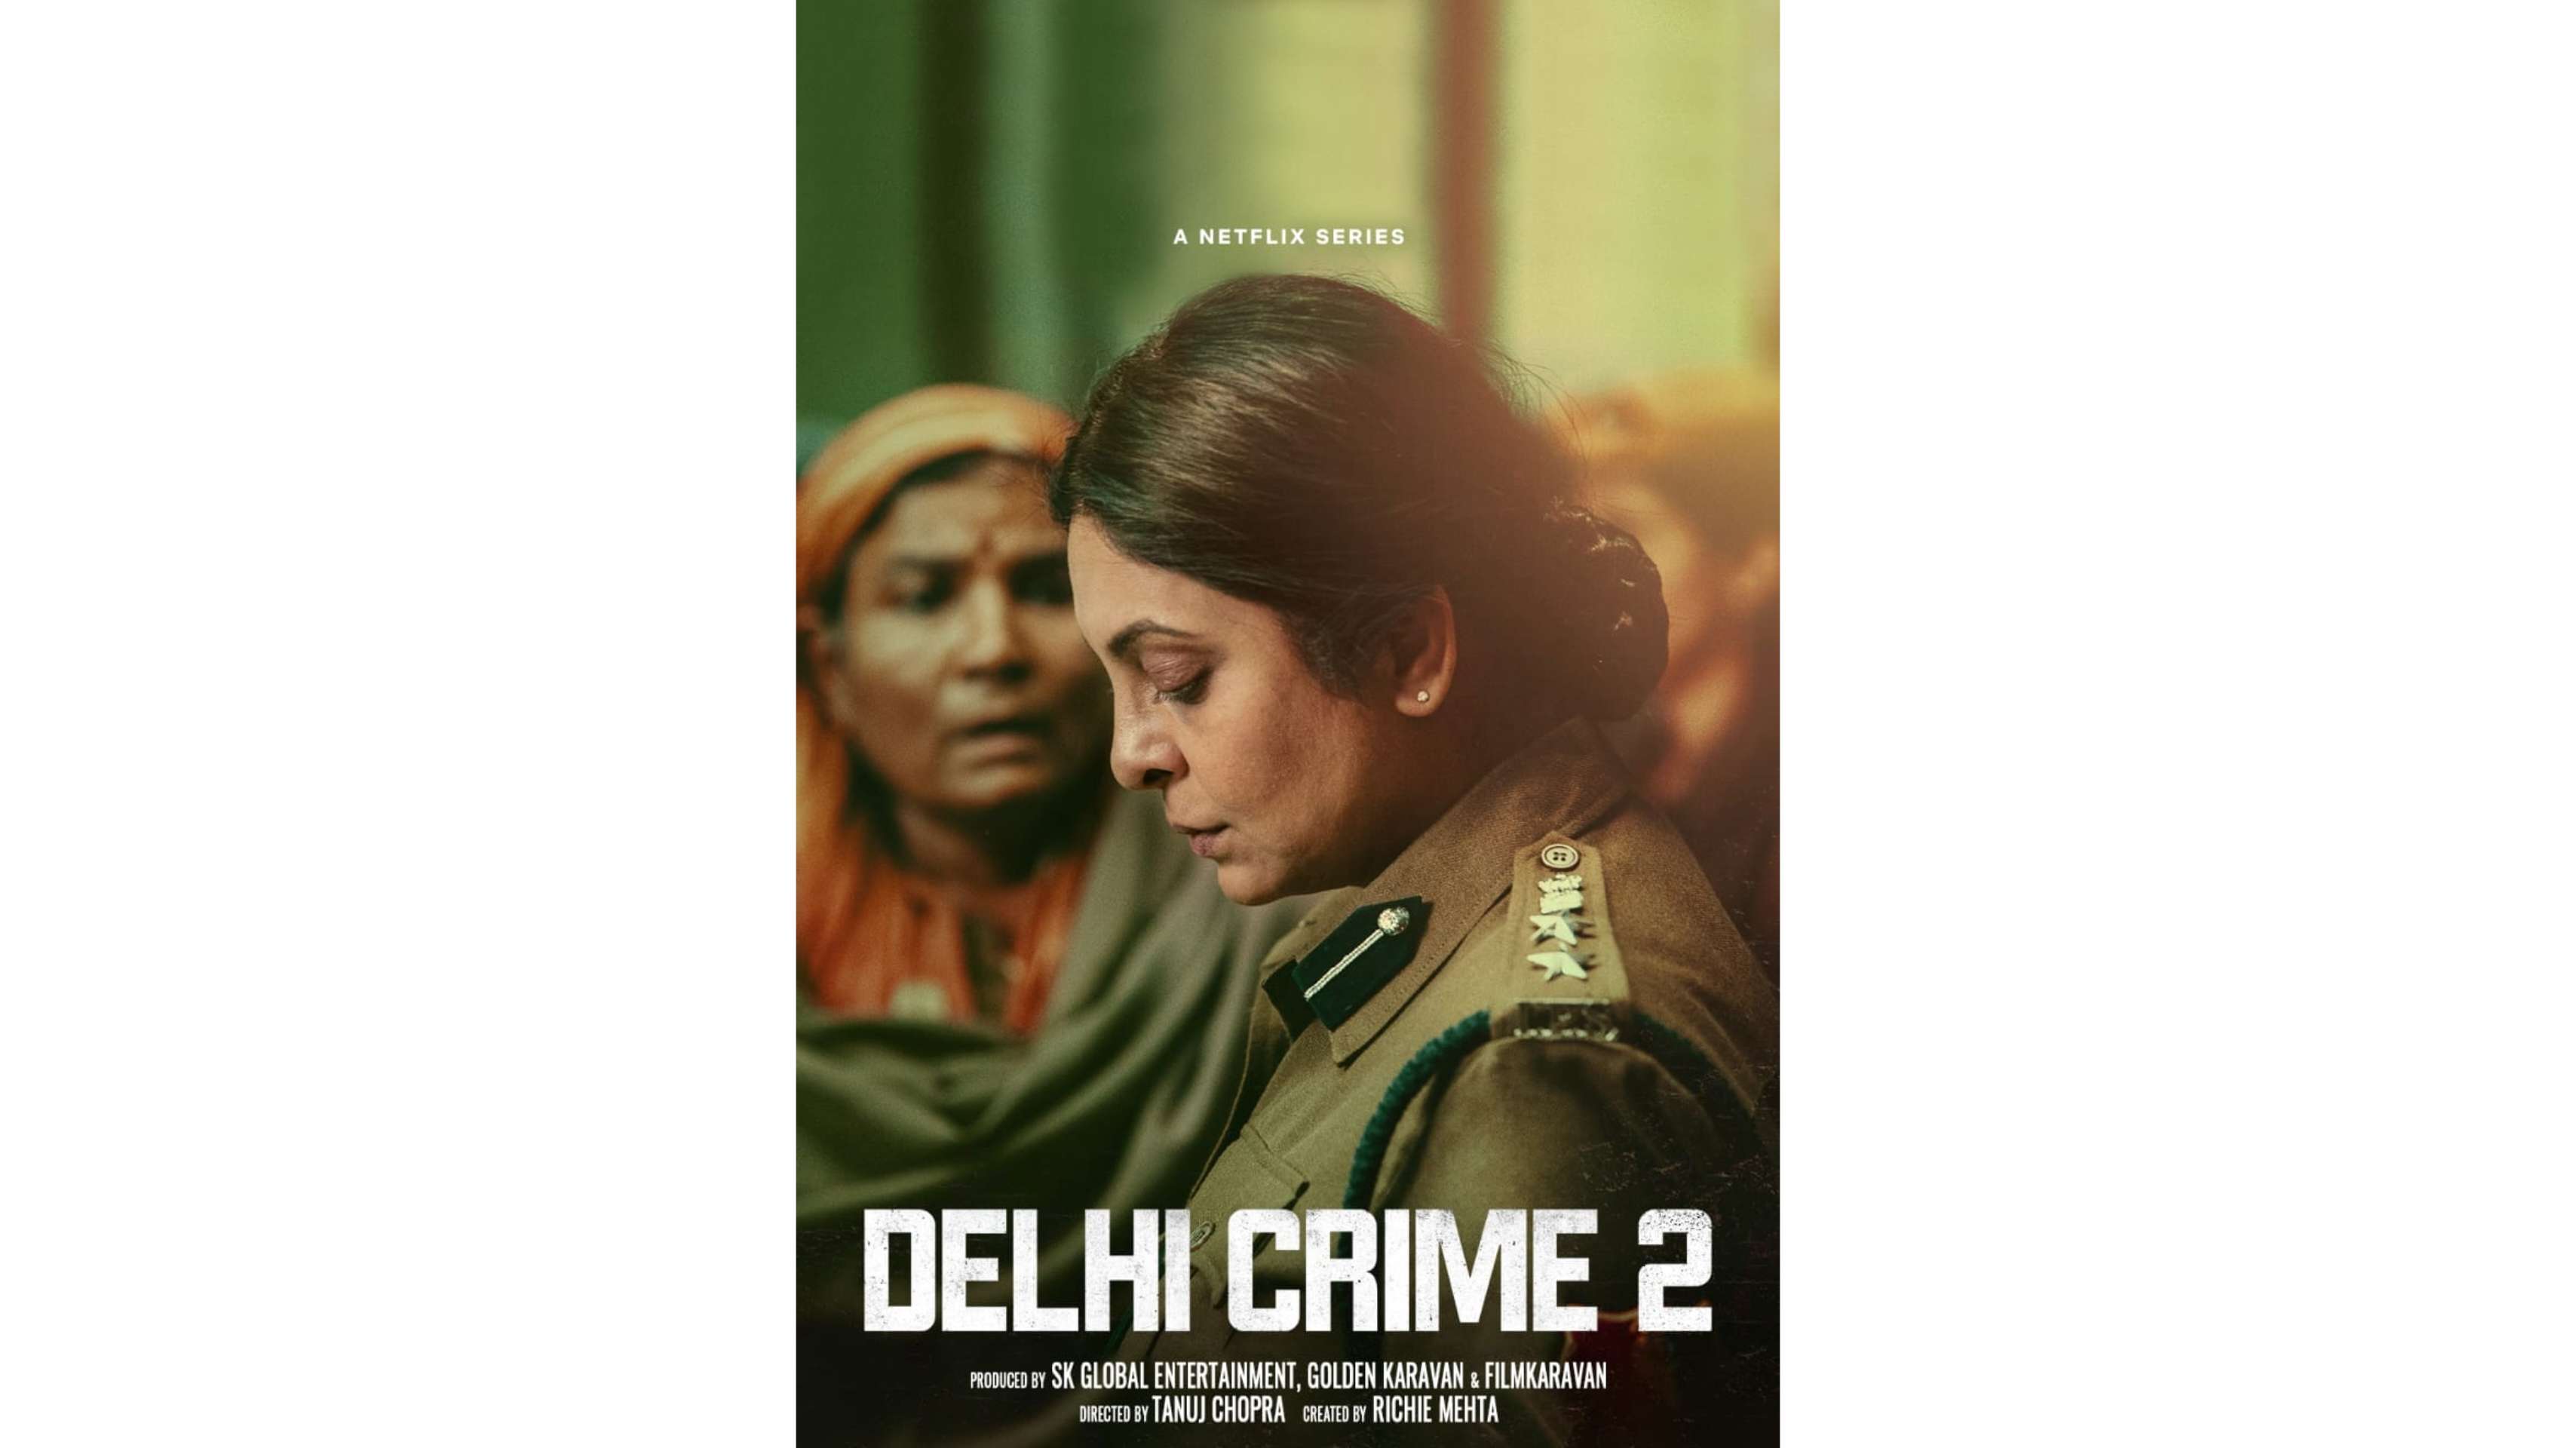 26 अगस्त को रिलीज होगा दिल्ली क्राइम सीजन 2 , वीभत्स हत्याओं पर आधारित है कहानी